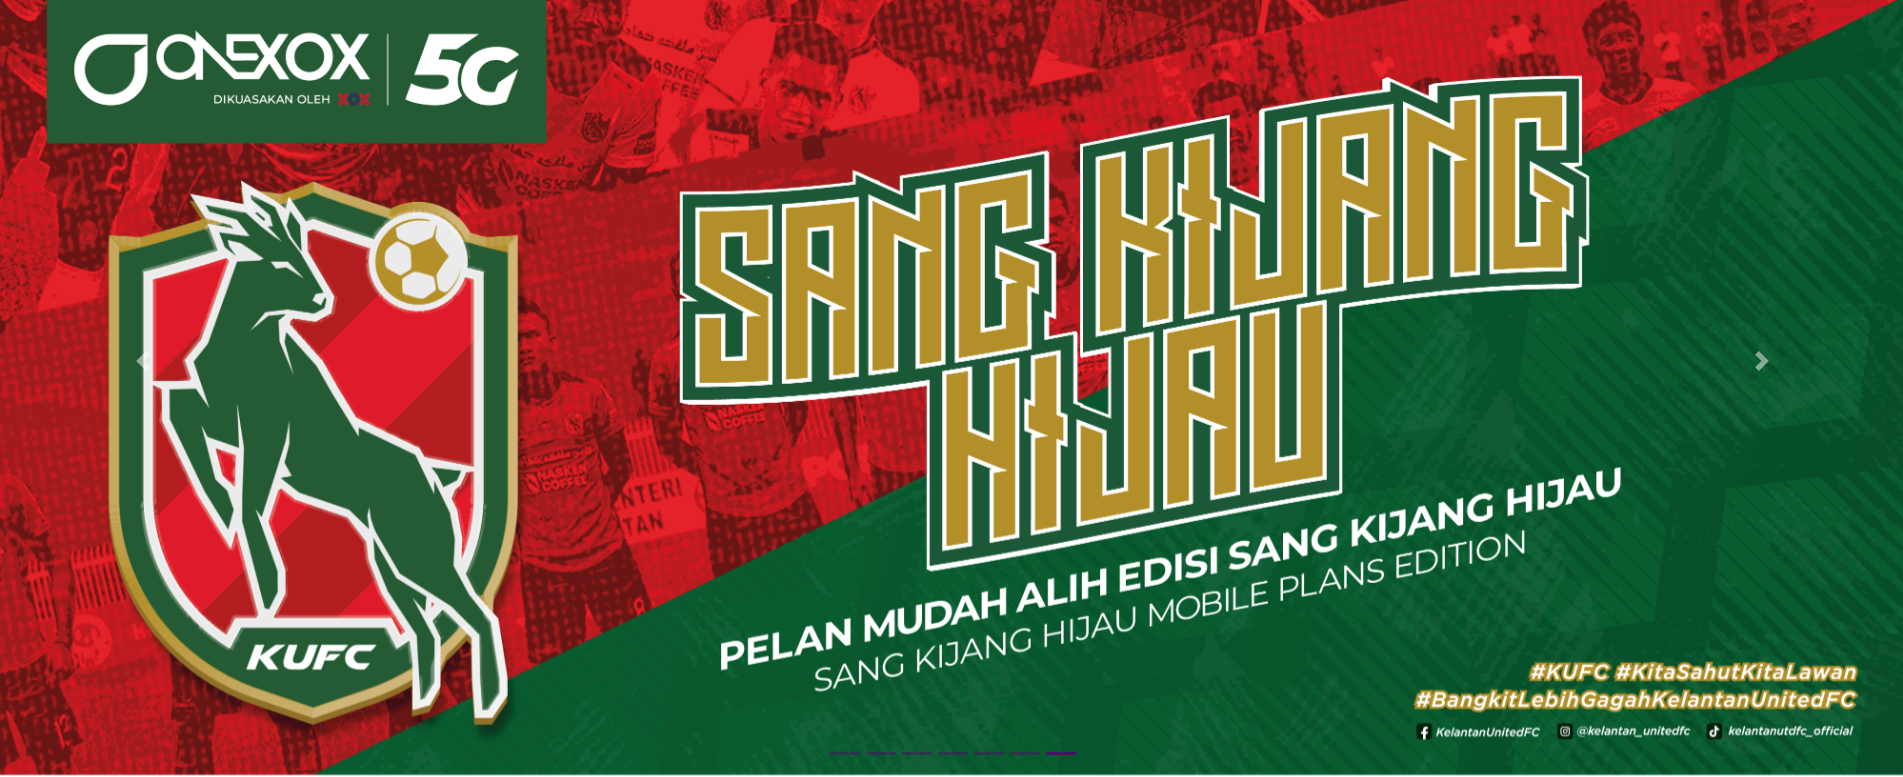 Onexox Kelantan FC Edition - Sang Kijang Hijau